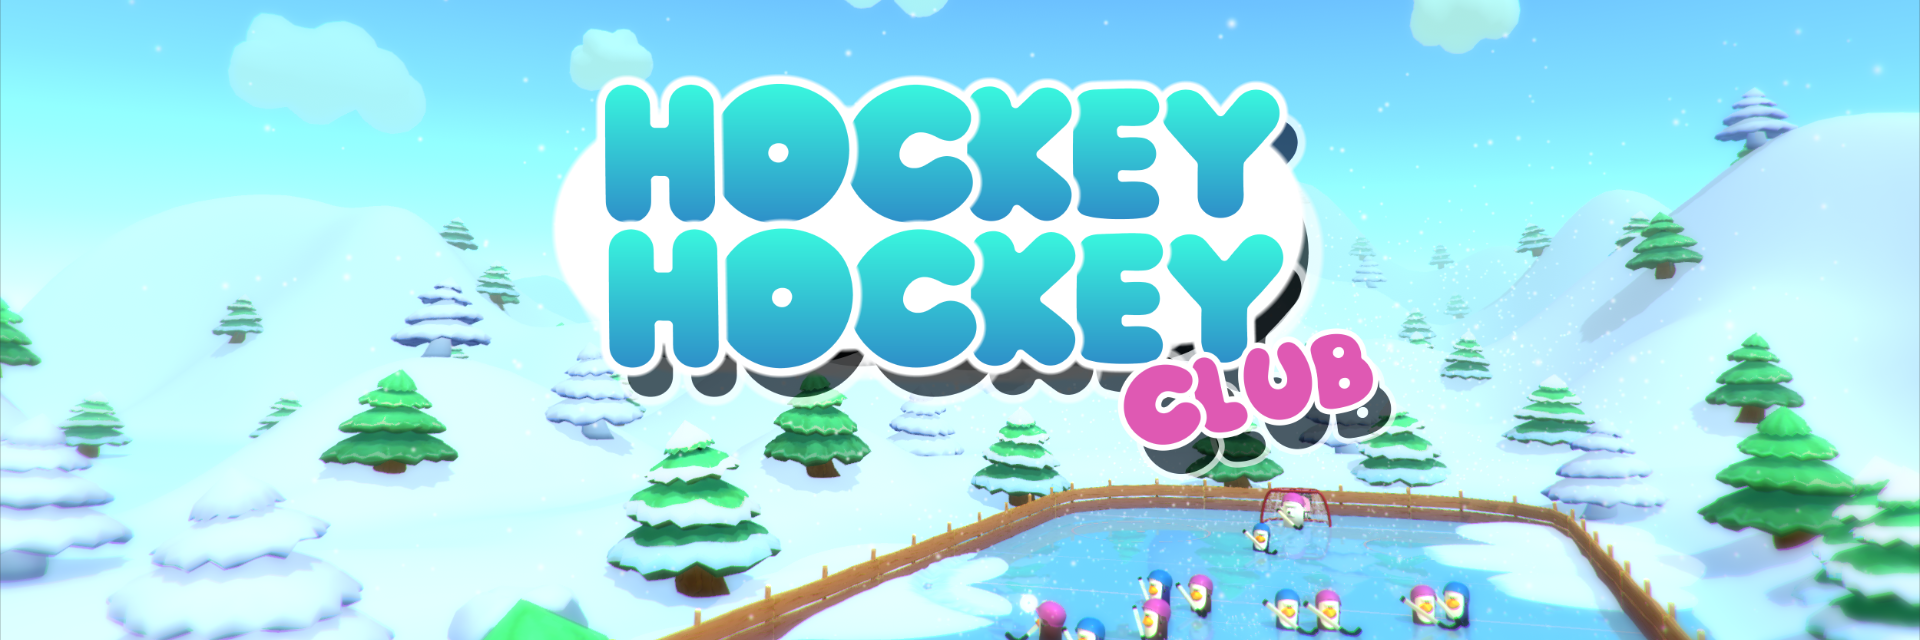 Hockey Hockey Club